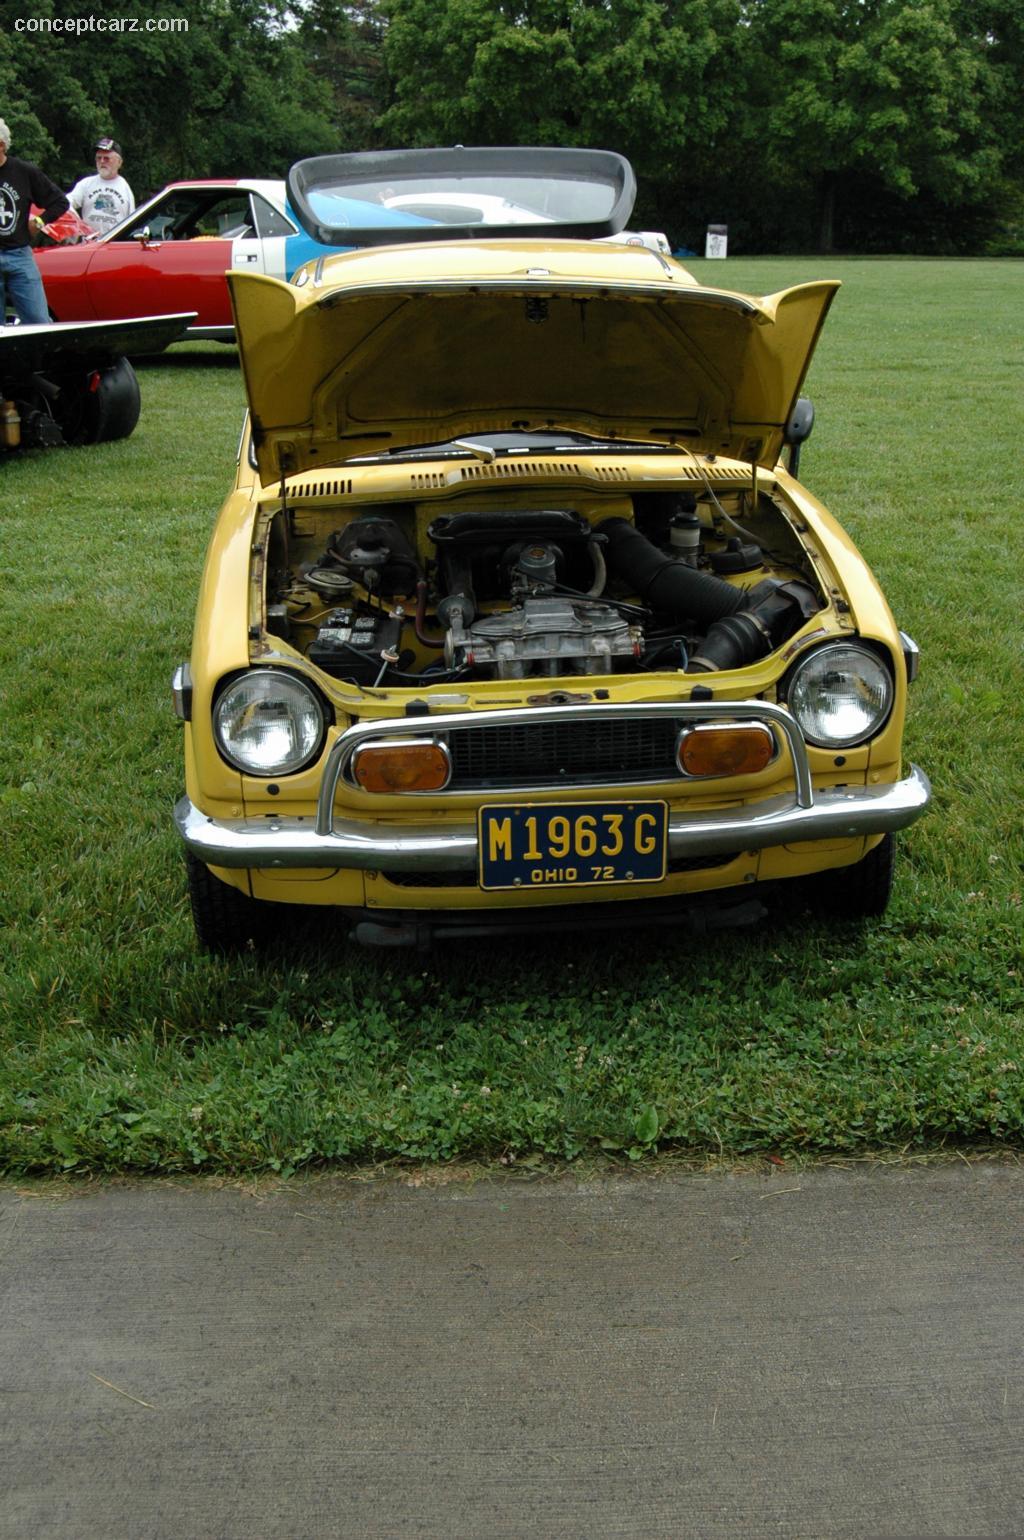 1972 Honda 600